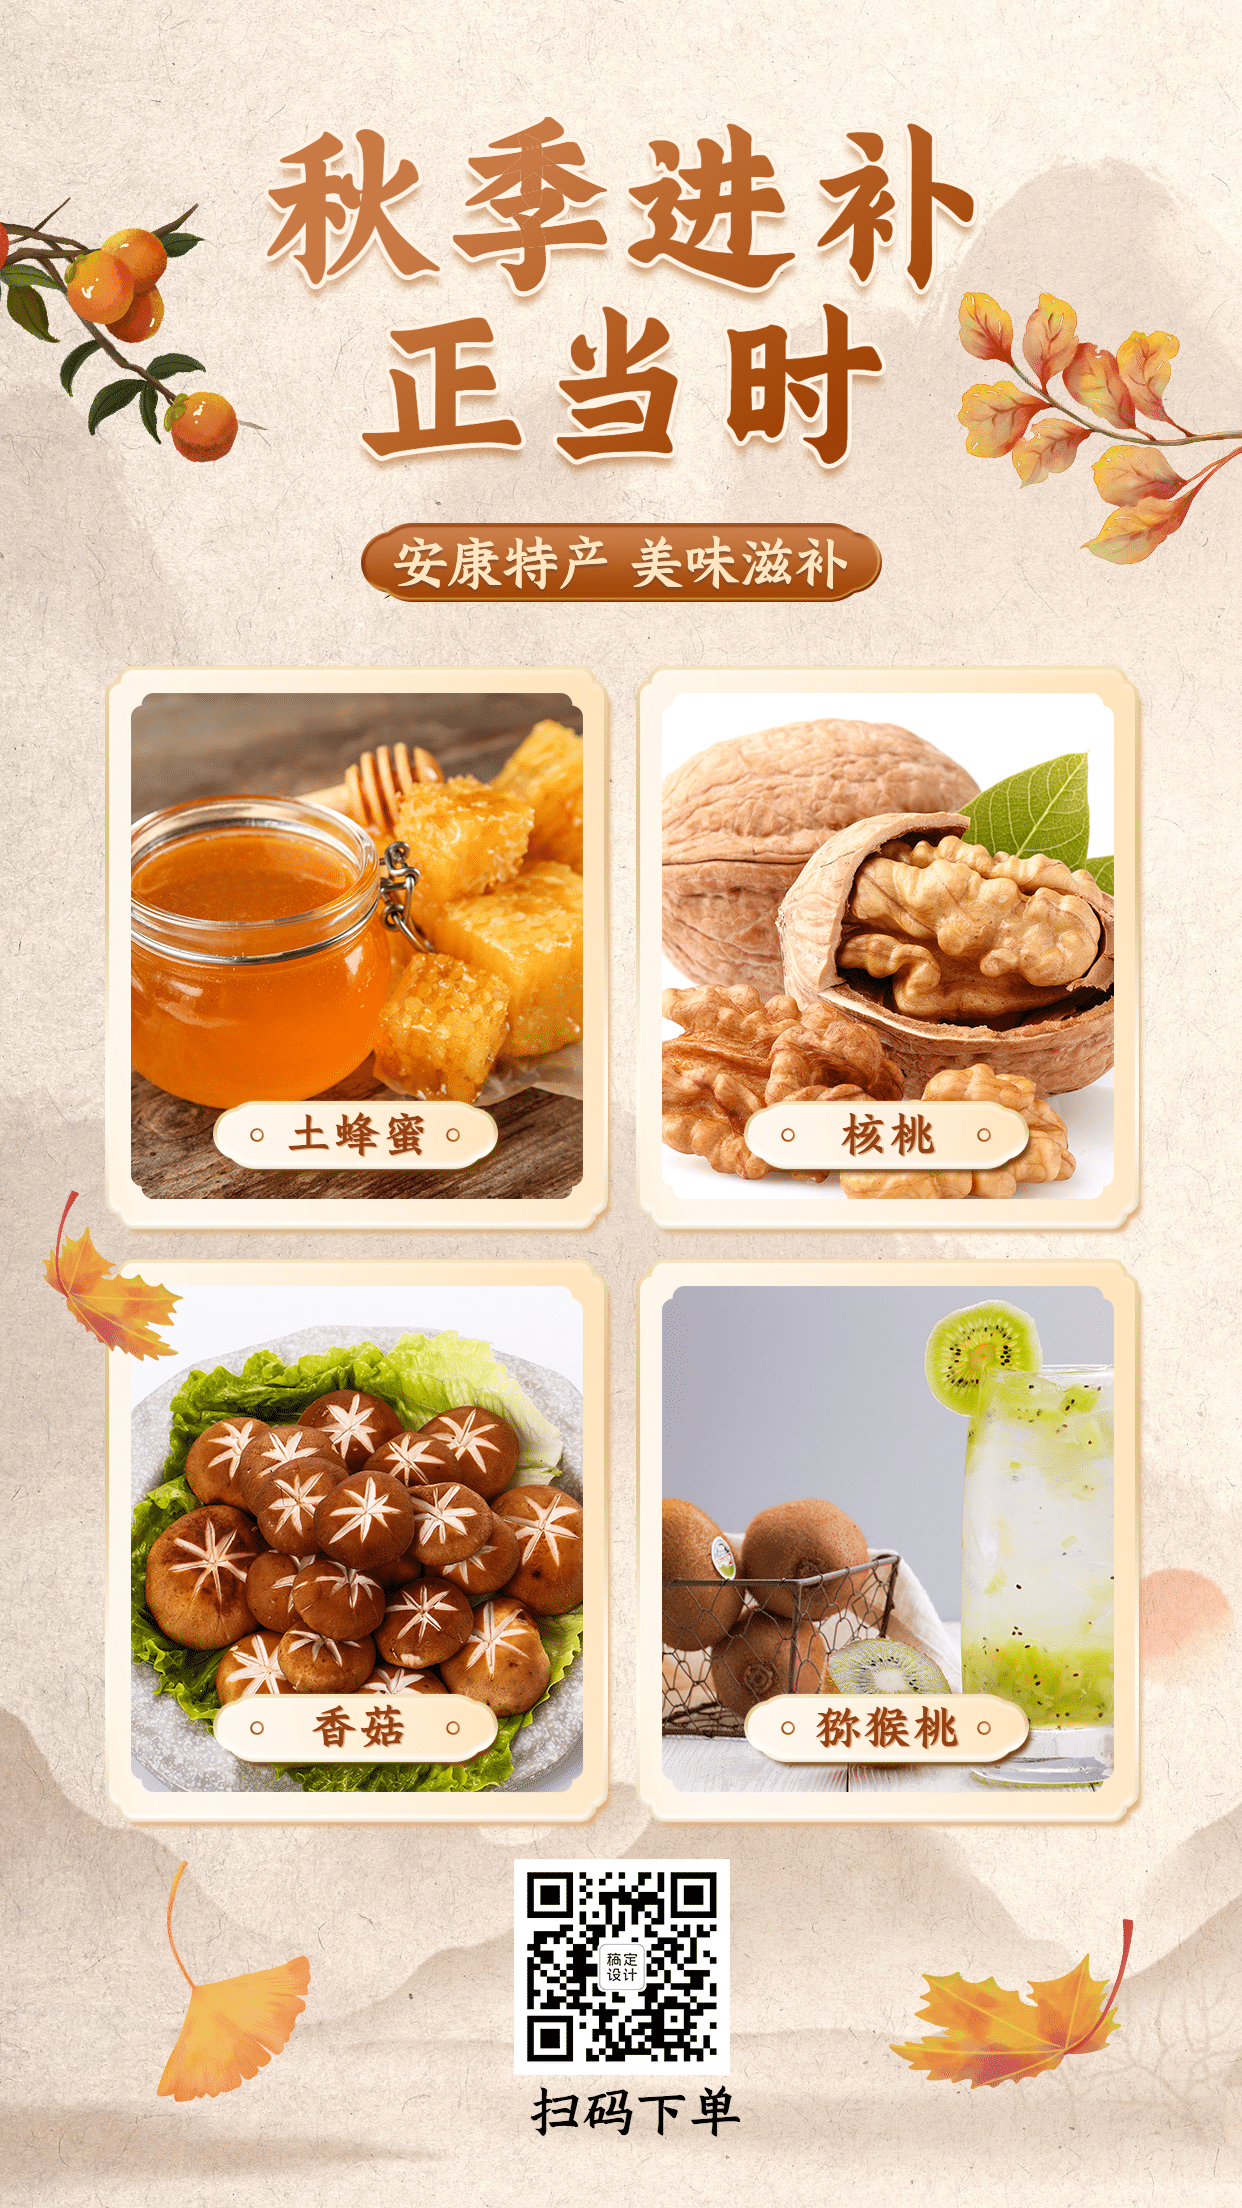 中国风秋季营销产品展示养生食疗预览效果